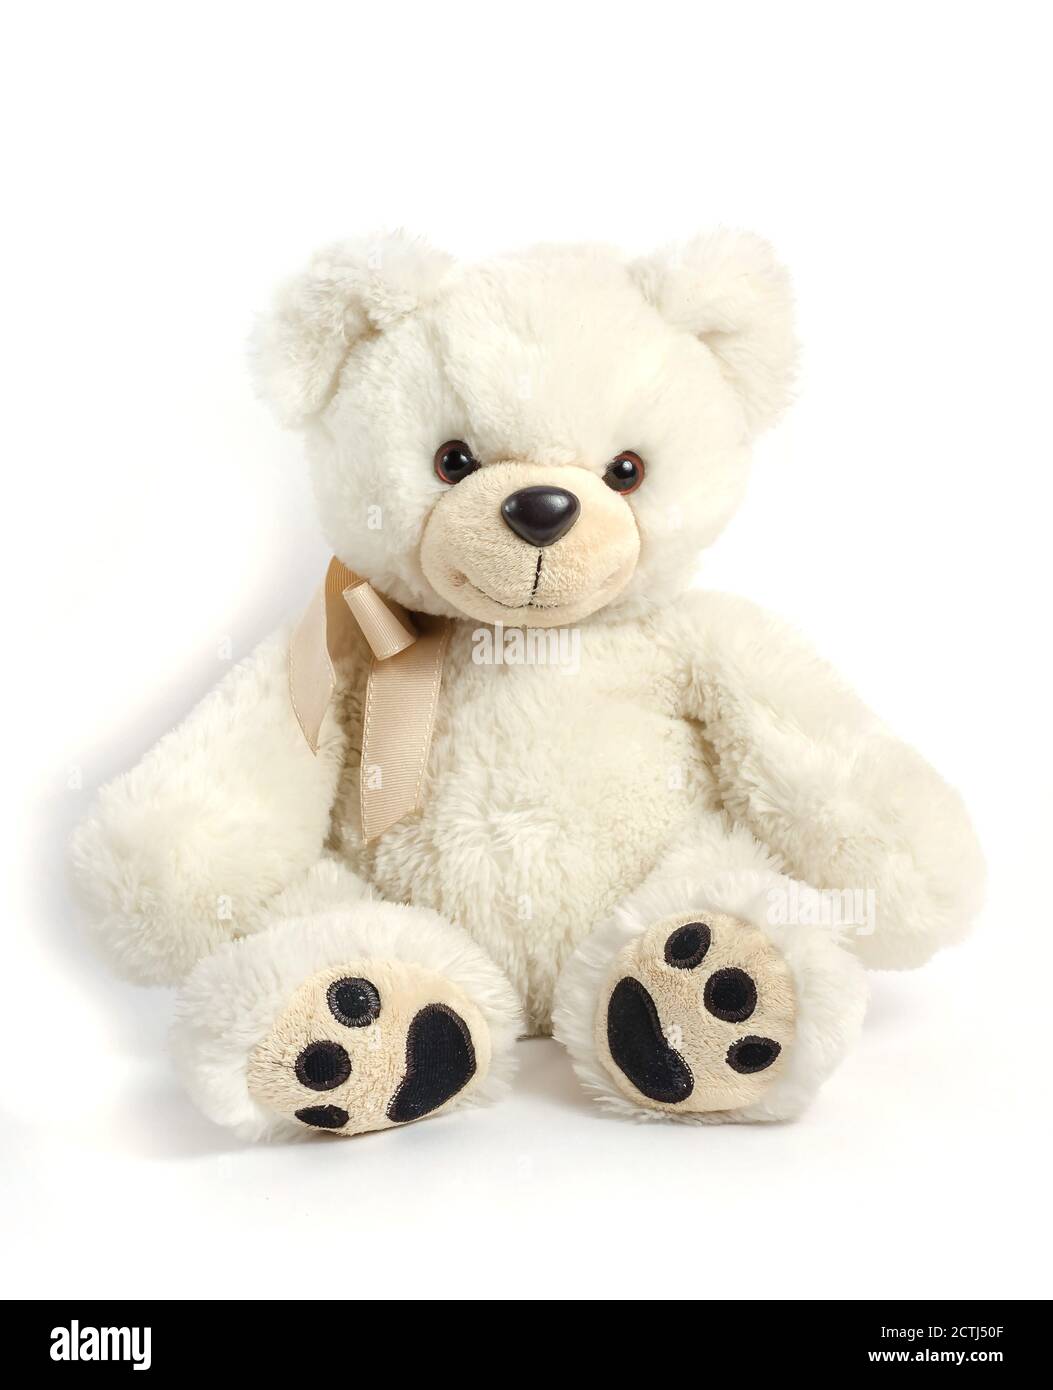 Jouet pour enfants - ours en peluche blanc sur fond blanc Banque D'Images